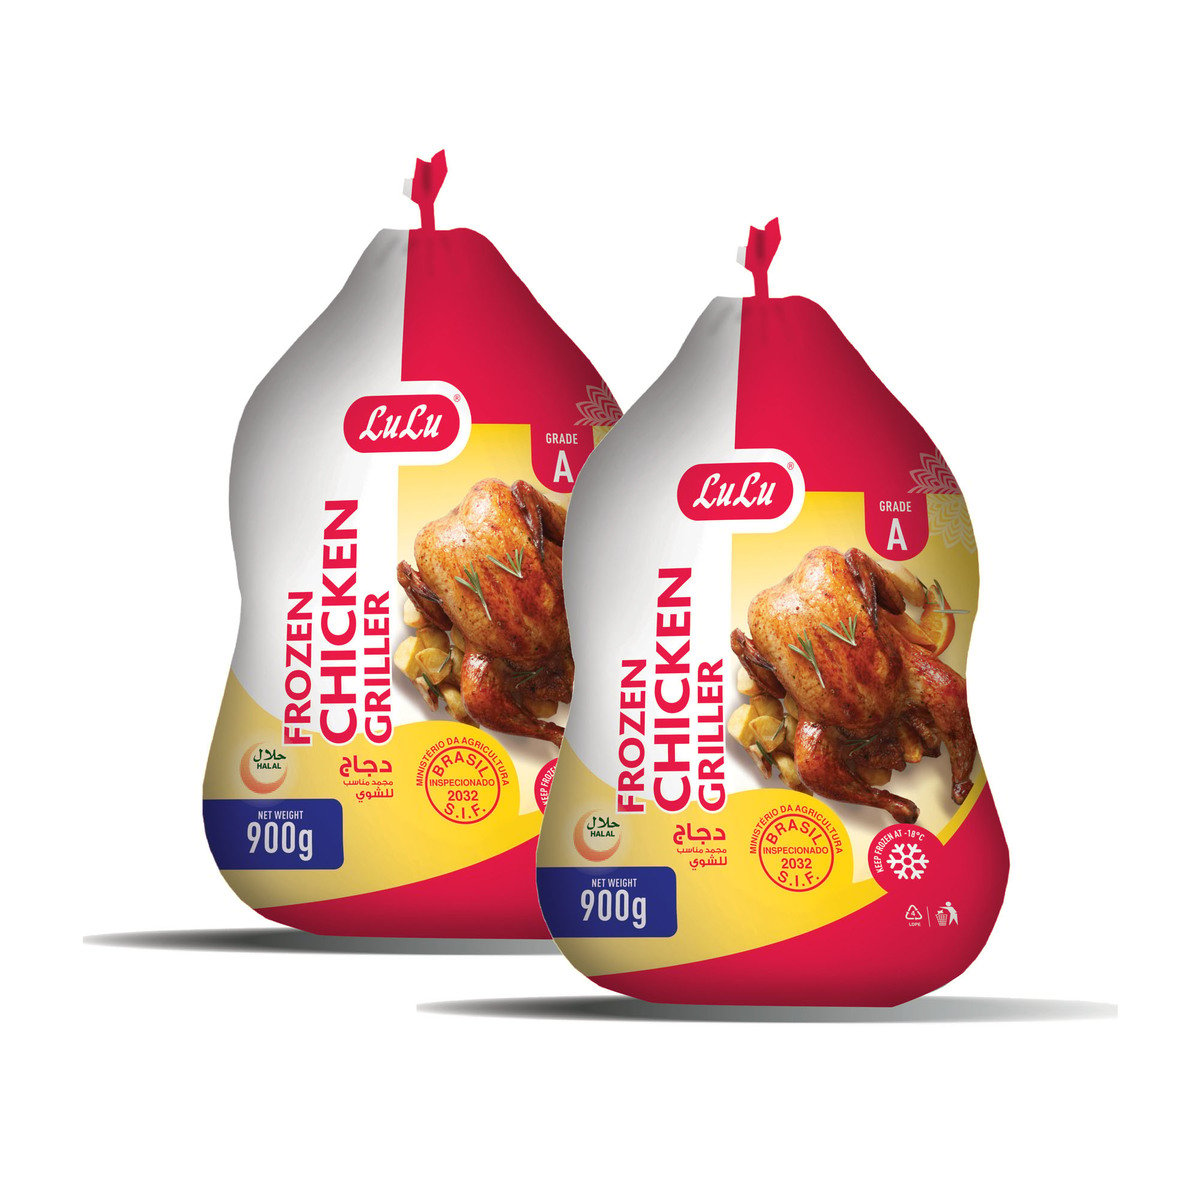 LuLu Frozen Chicken Griller 2 x 900g Online at Best Price | Whole ...